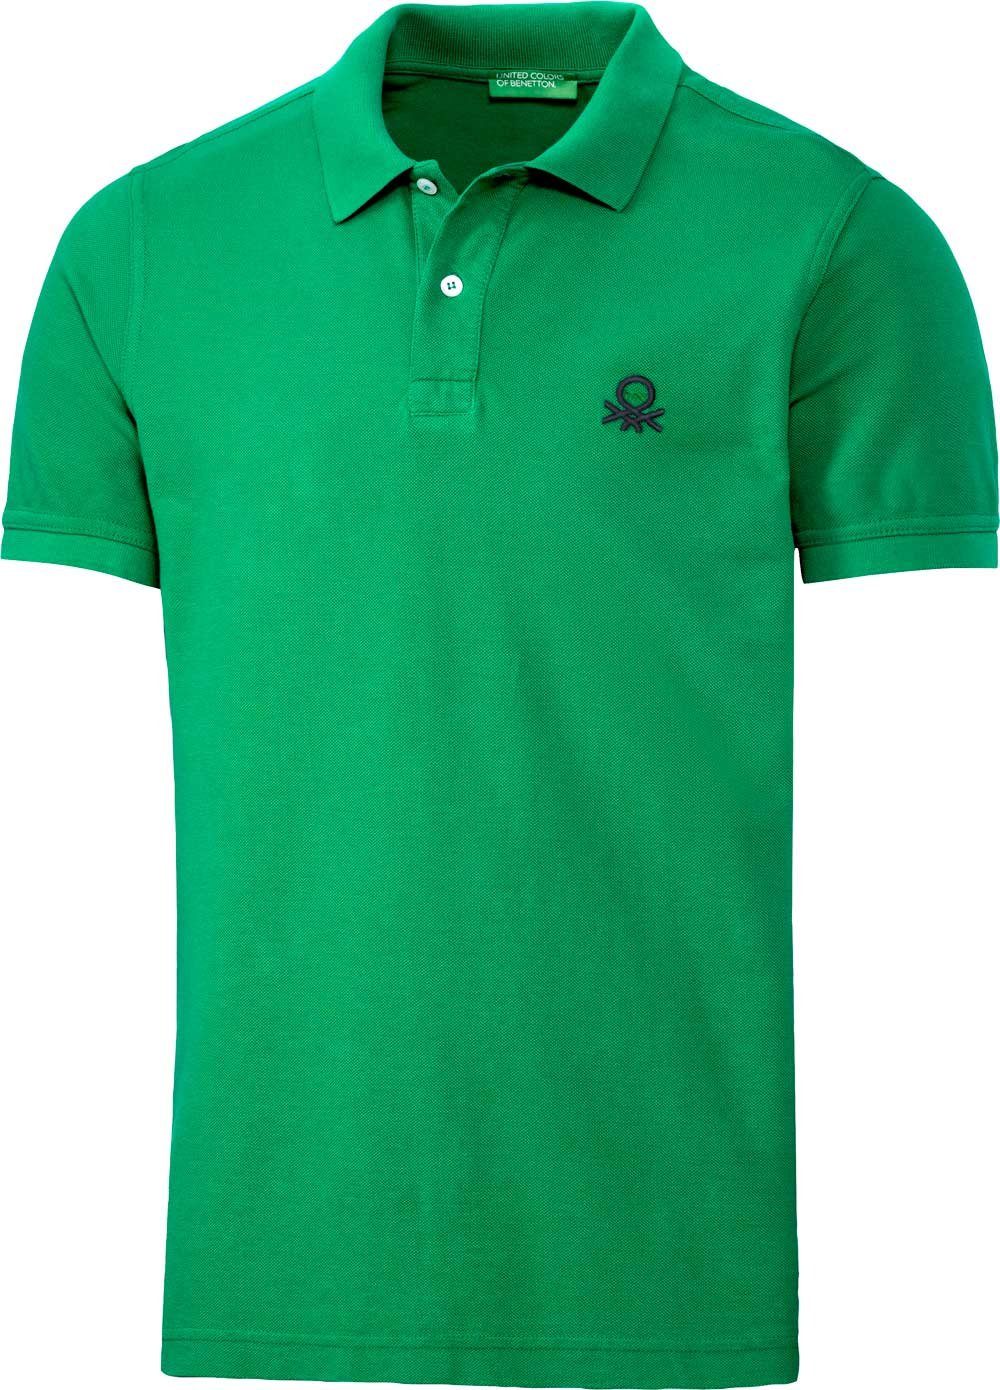 Grüne Poloshirts für Herren kaufen » Grüne Polohemden | OTTO